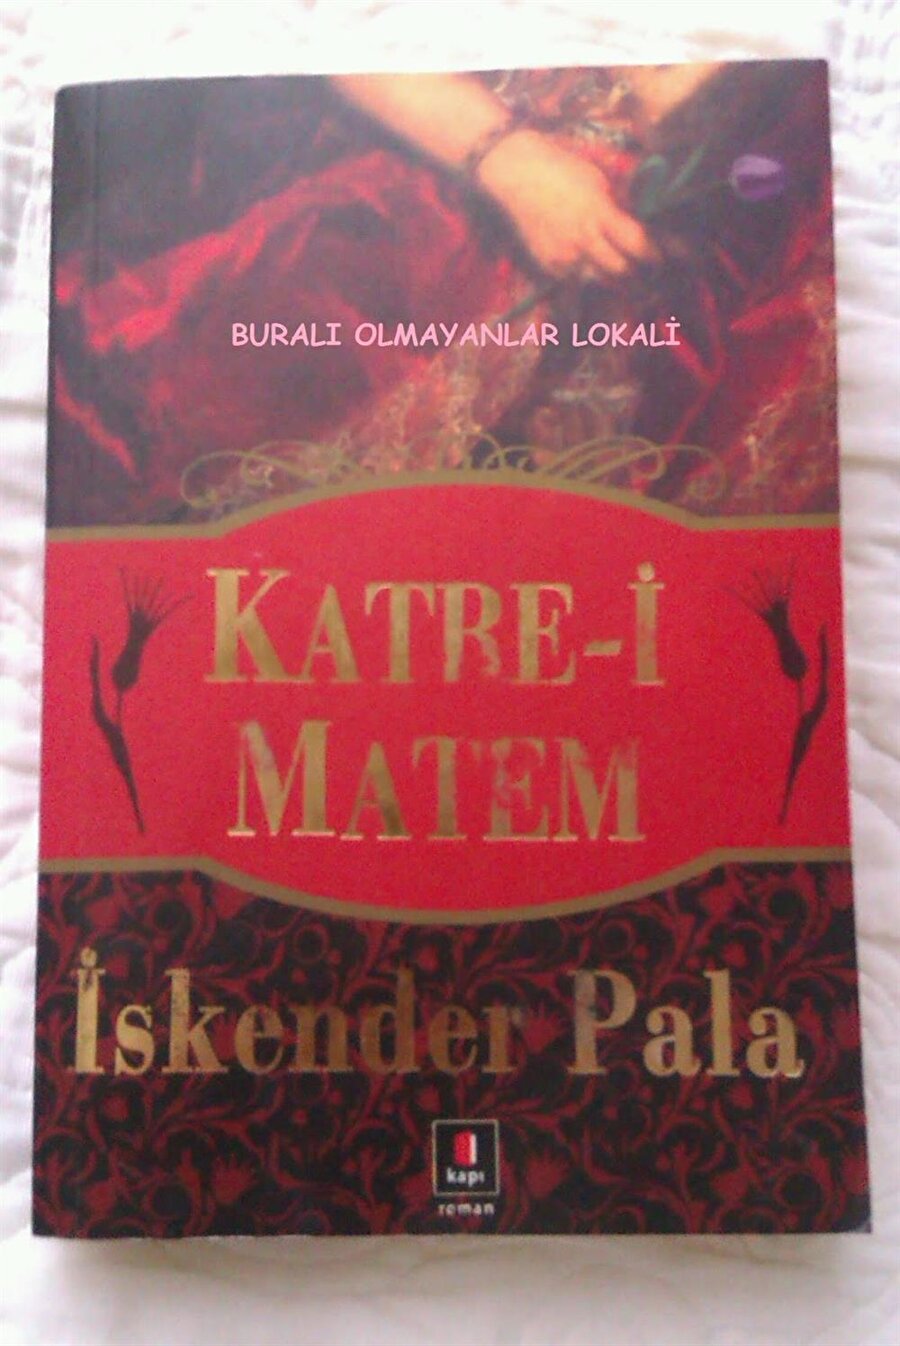 Katre-i matem
Çağımızın en değerli yazarlarından olan İskender Pala'nın 2008 yılında yayınladığı kitap, Osmanlı döneminde geçiyor. 

  
